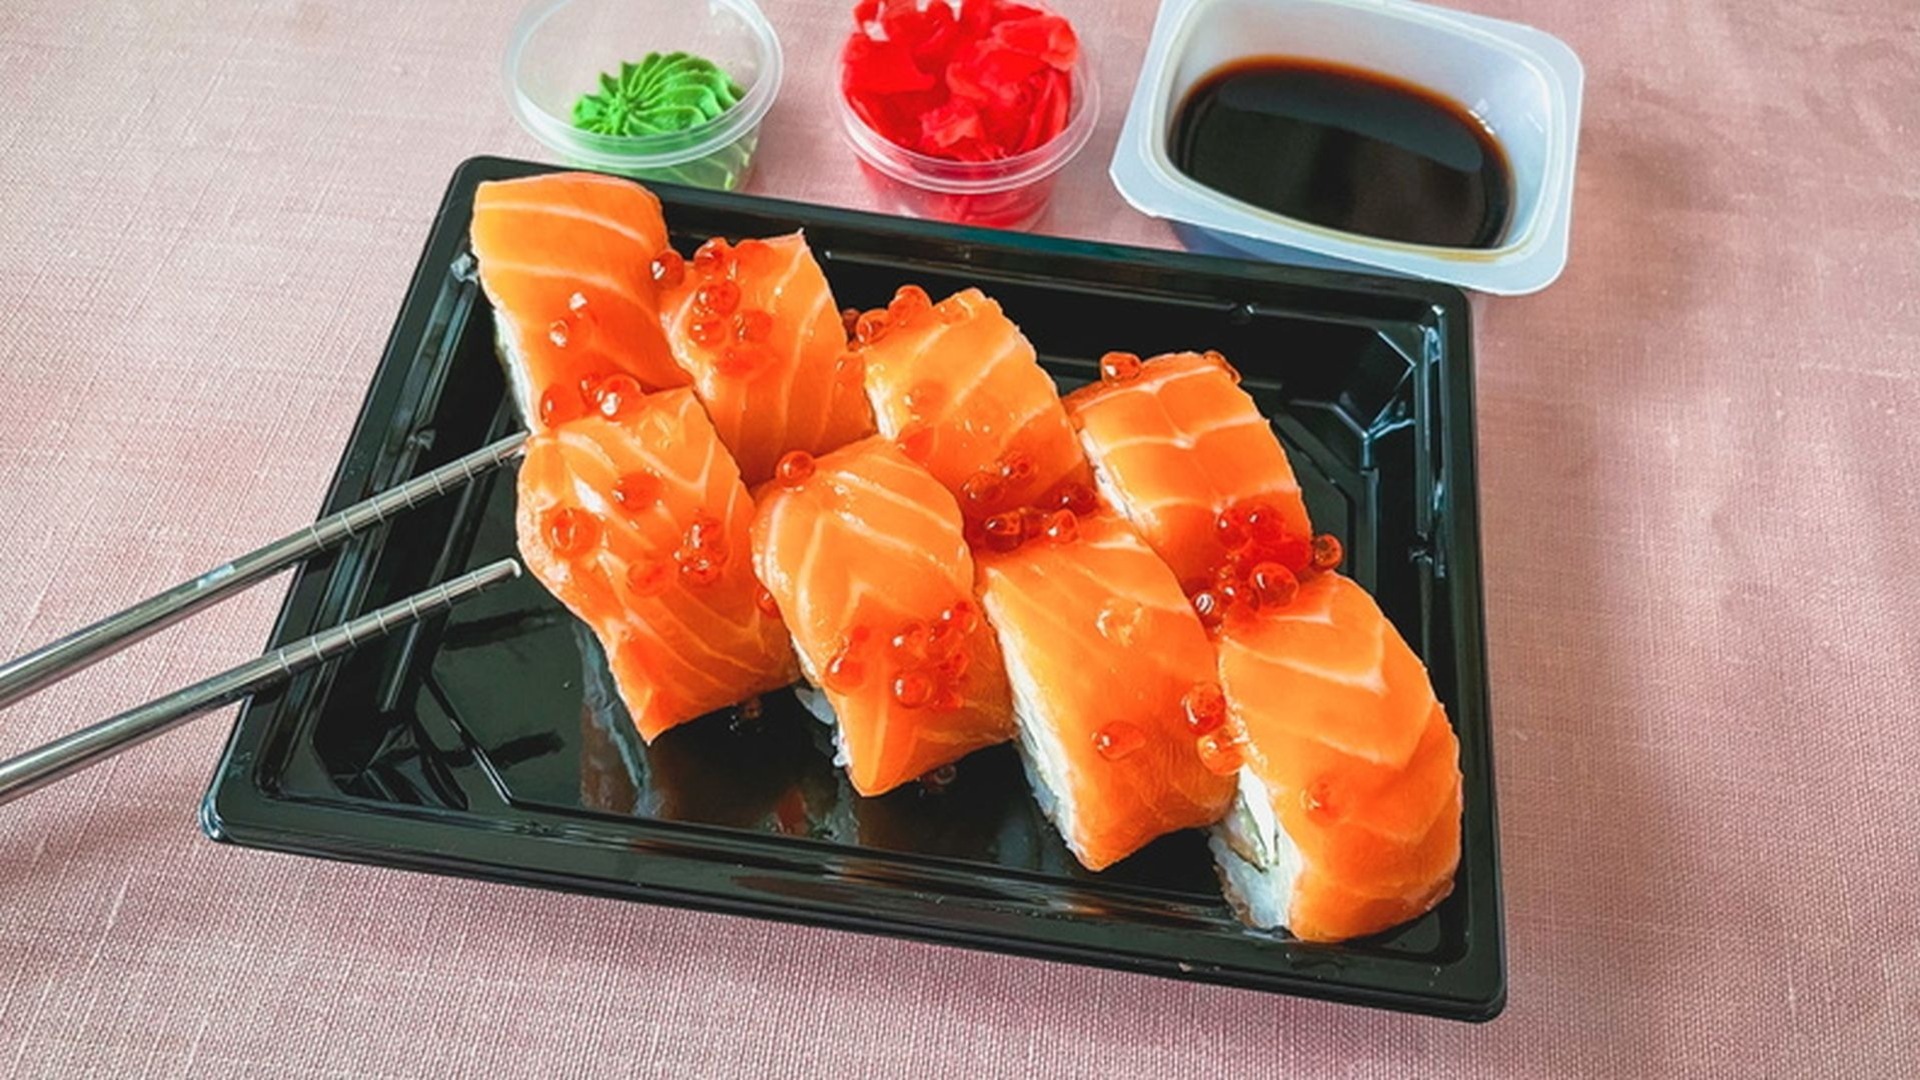 Описторхозом могут заразиться любители суши